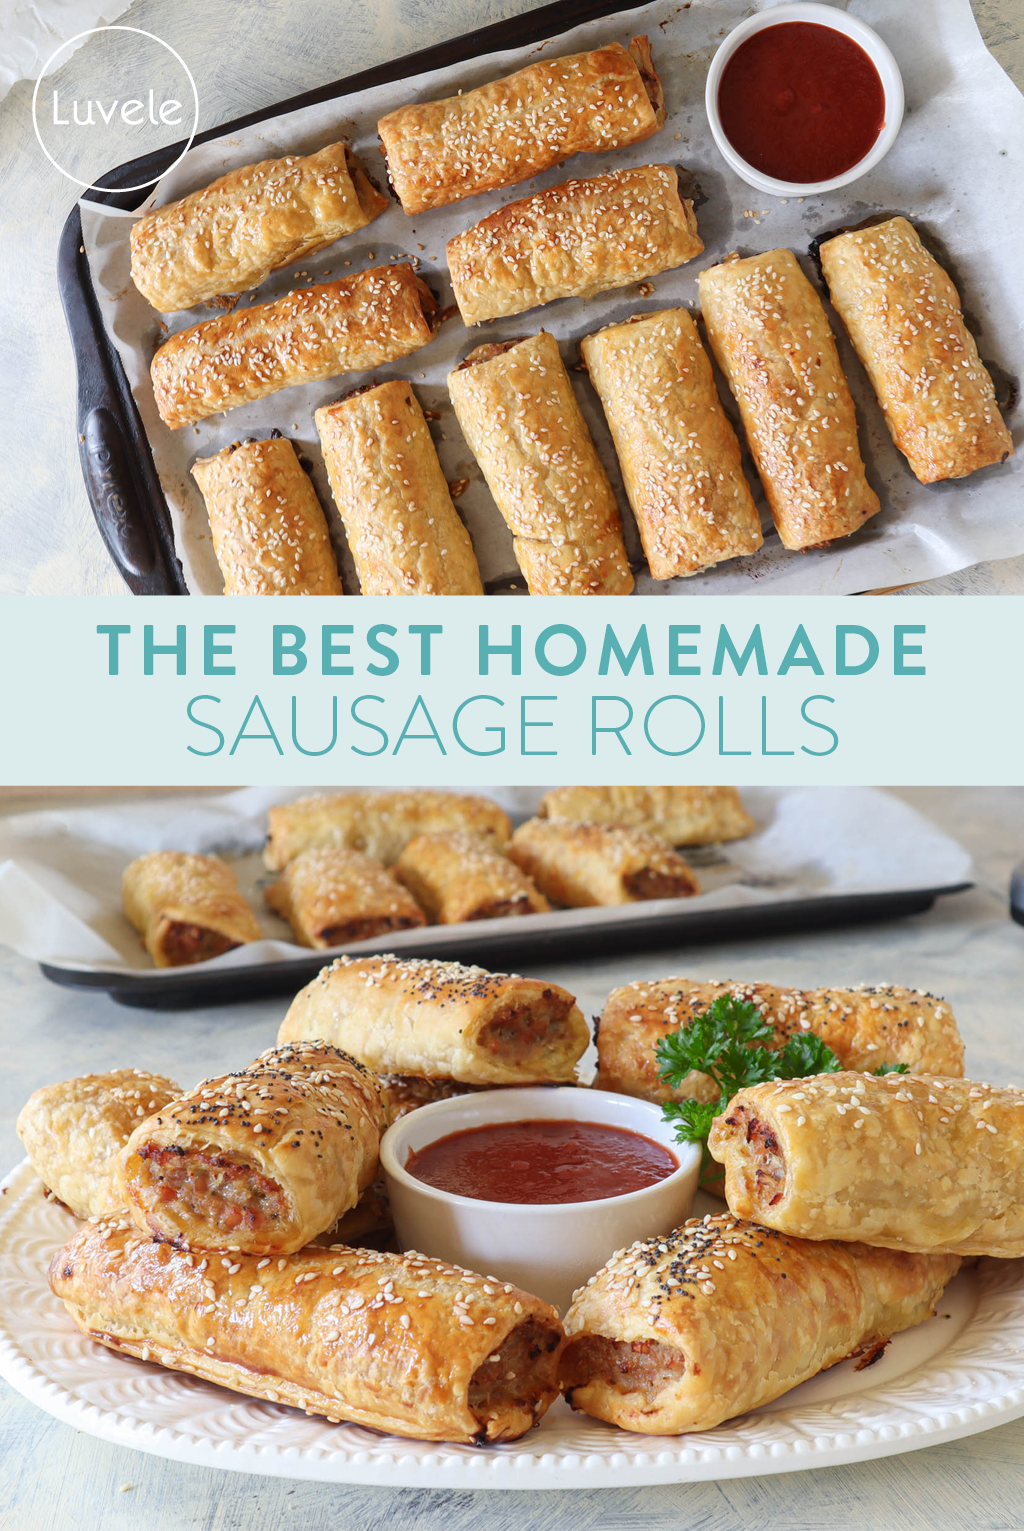 Homemade sausage rolls